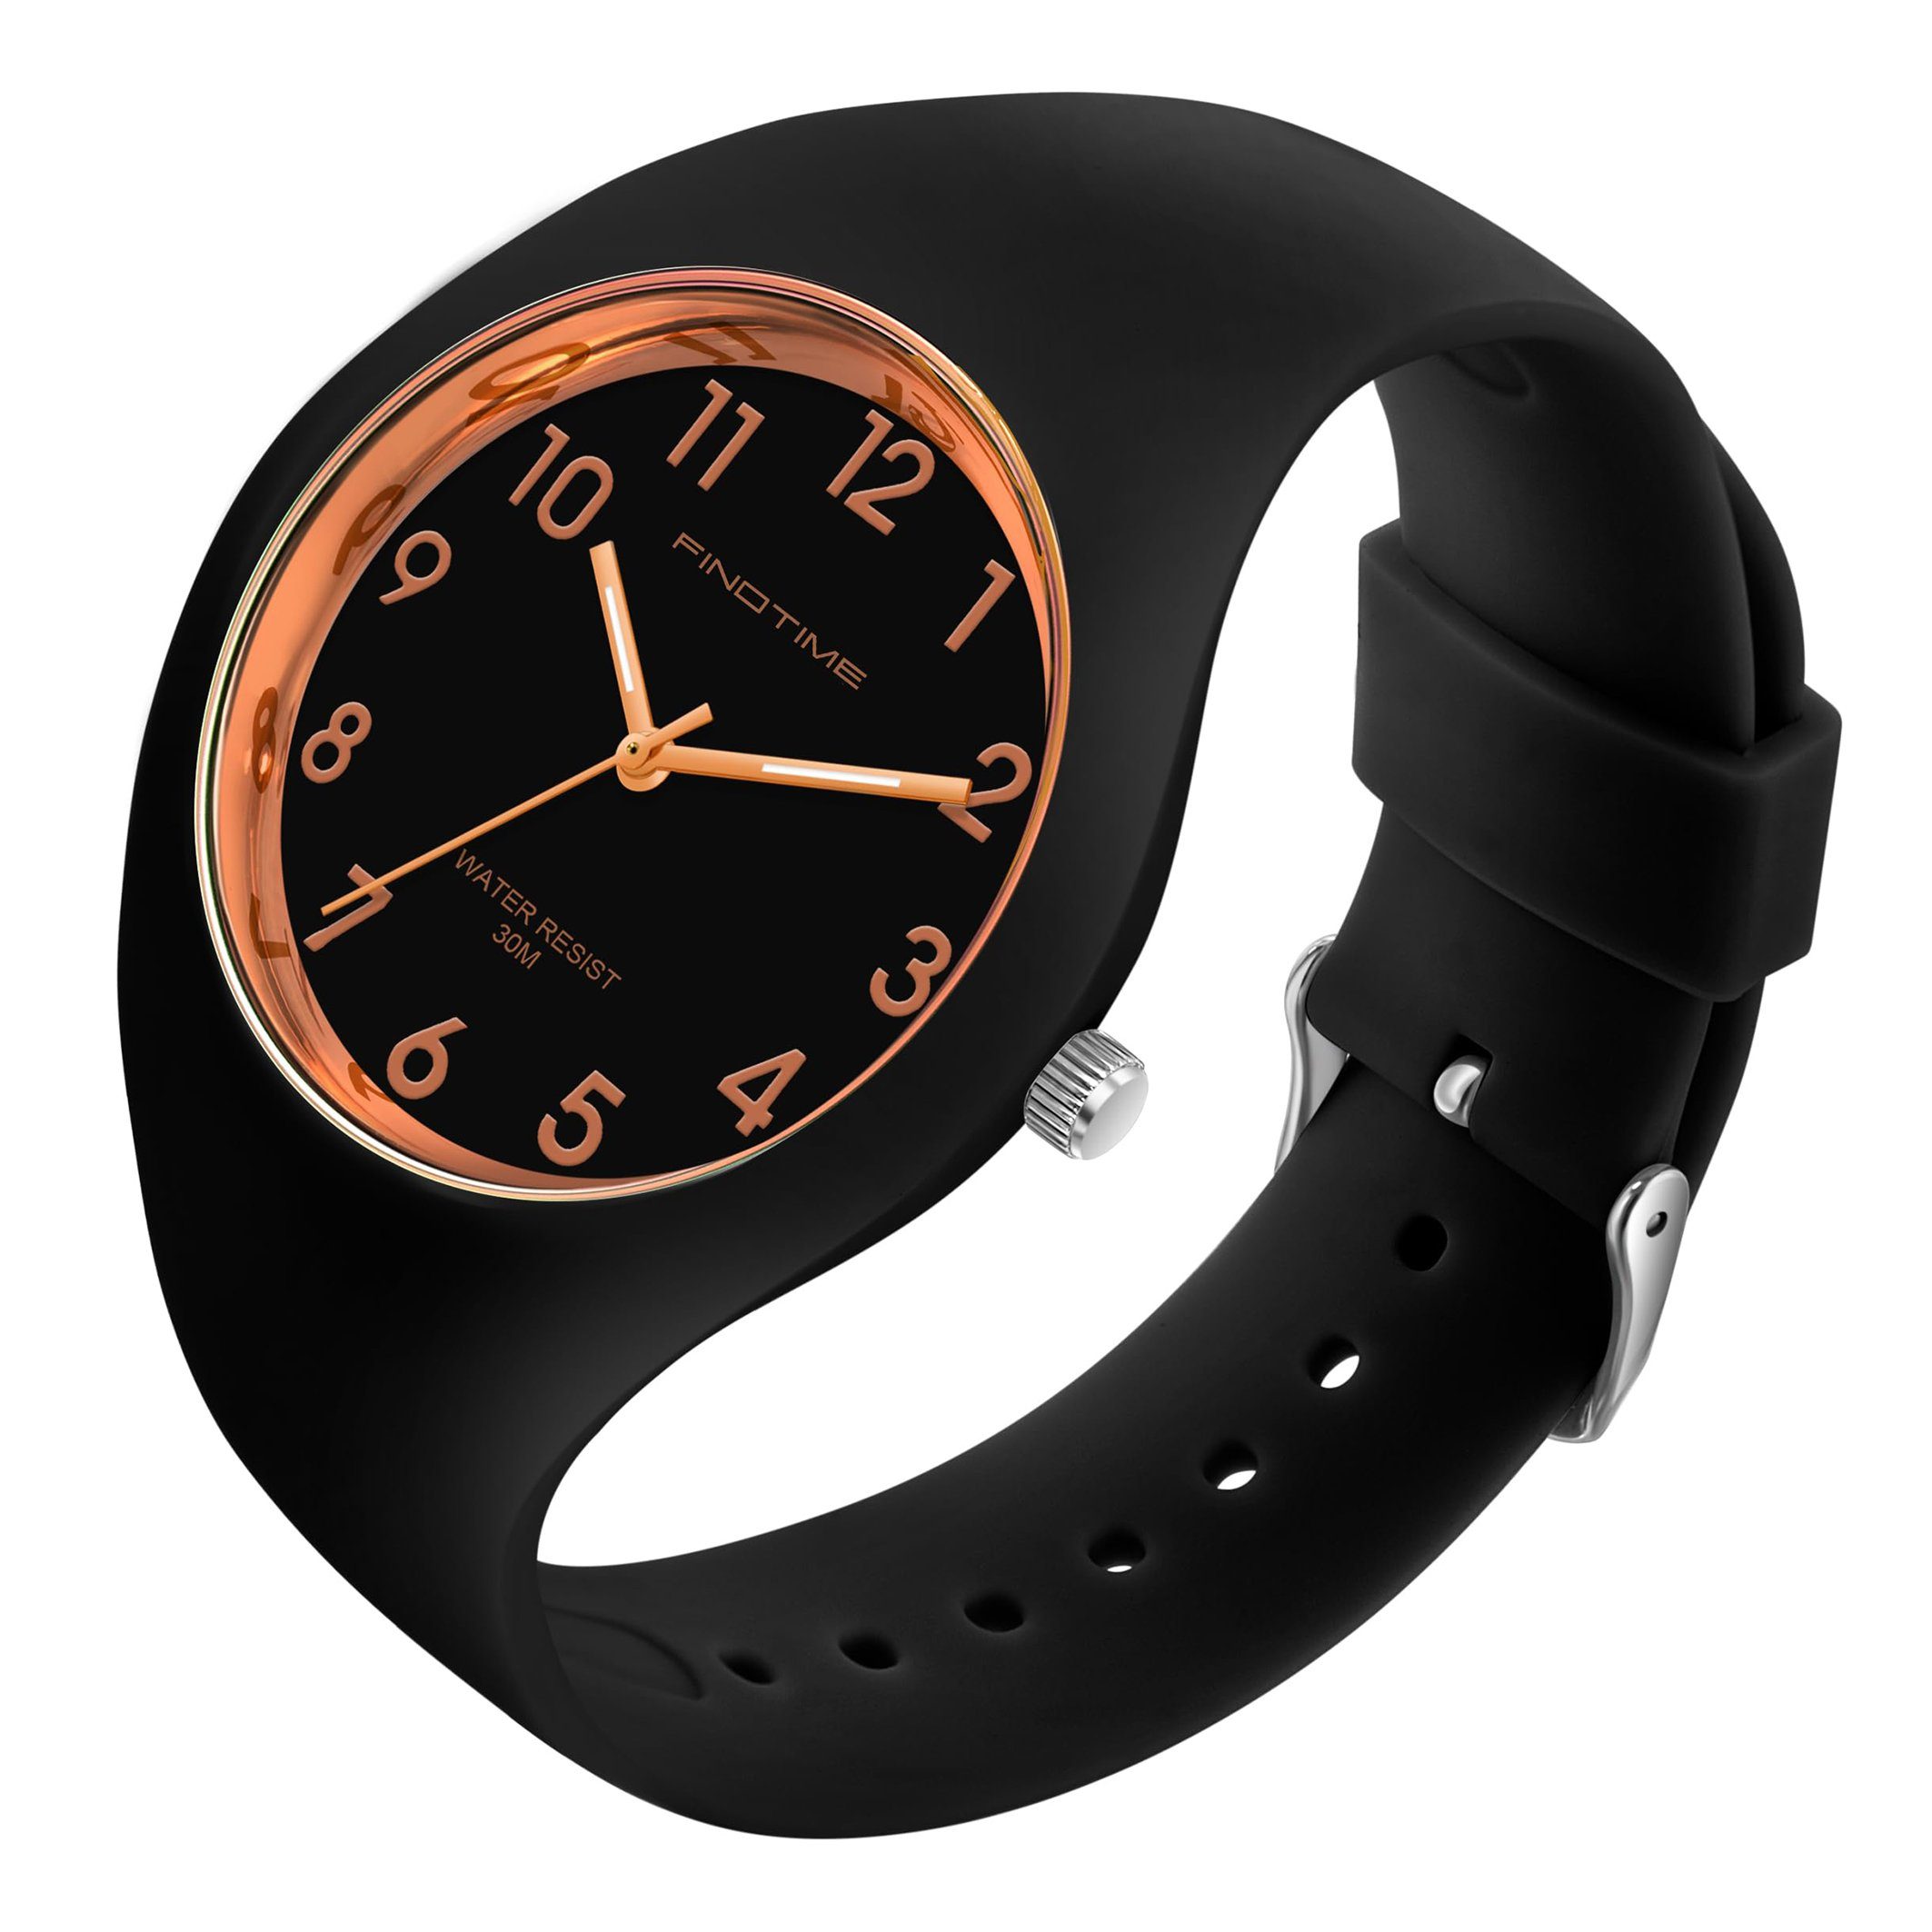 GelldG Uhr Armbanduhr Uhren analog Quarz mit Silikonarmband wasserdicht Sportuhr Gold, Schwarz